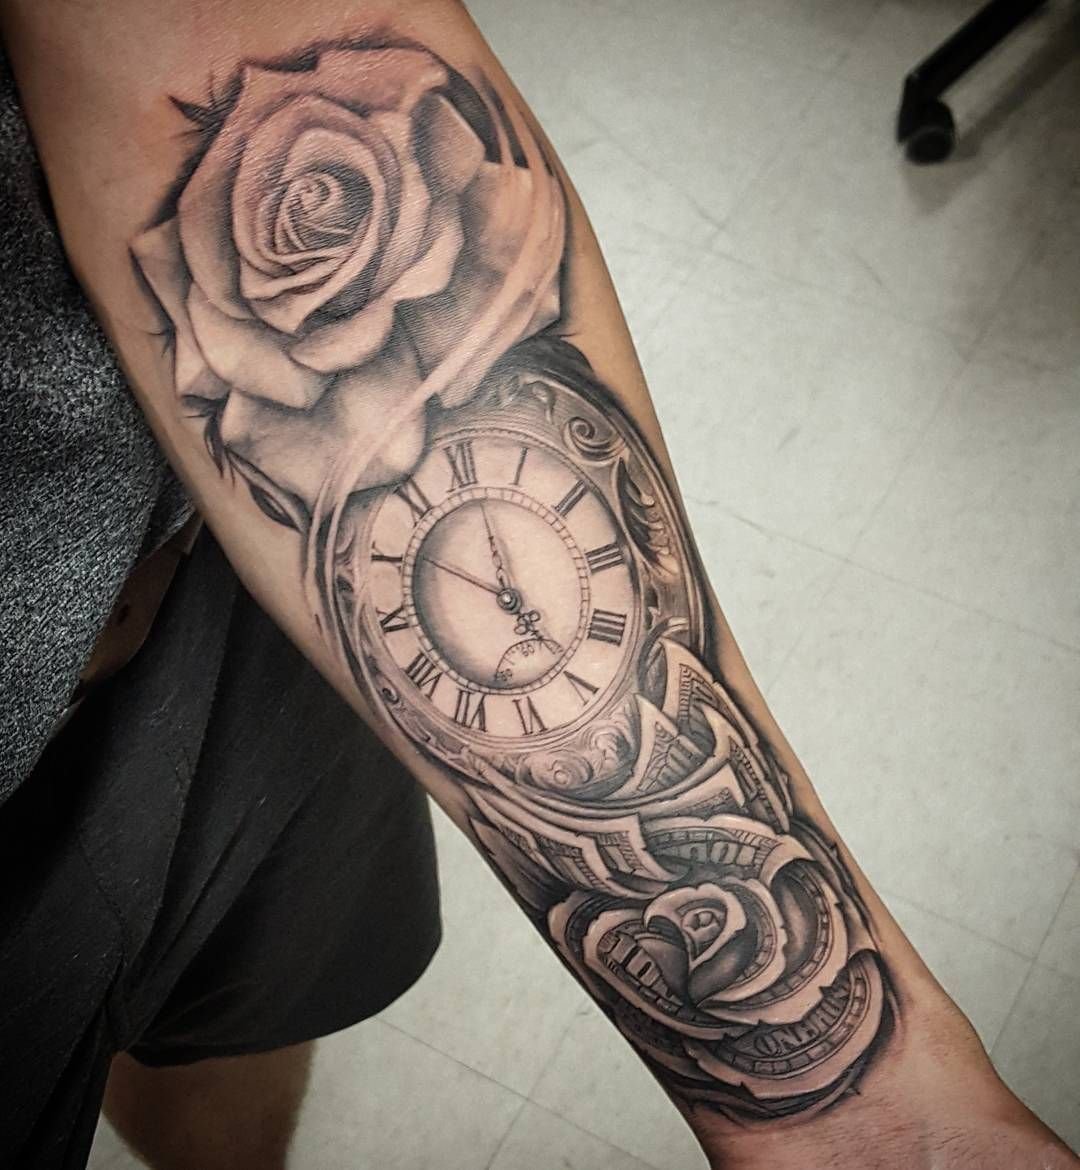 Тату на руке часы и роза